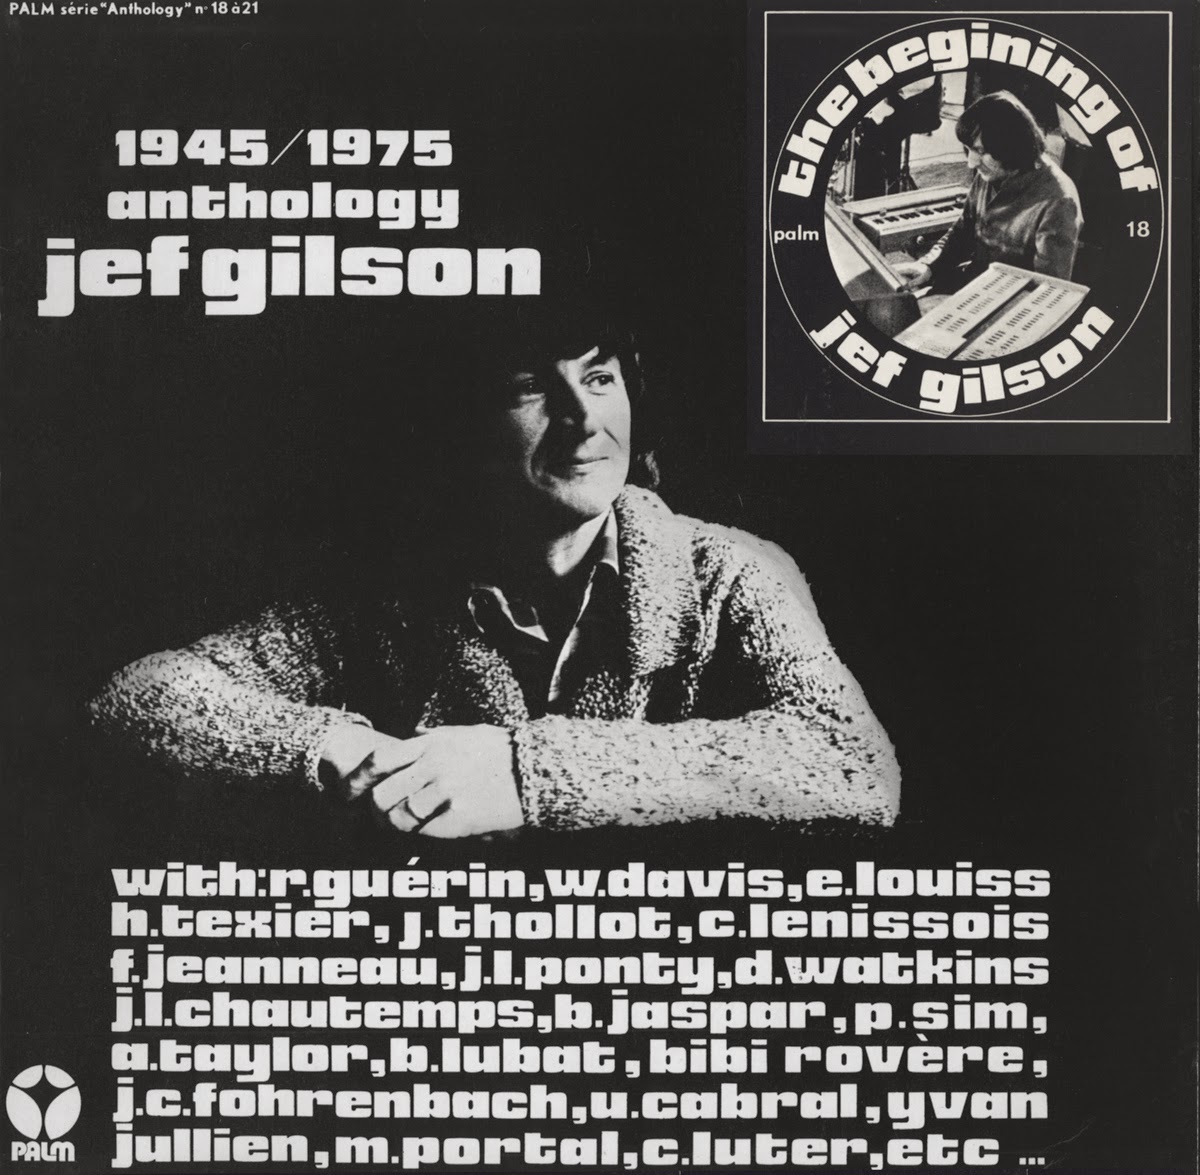 JEF GILSON - Anthology Jef Gilson 1945/1975 : The Beginning of Jef Gilson cover 